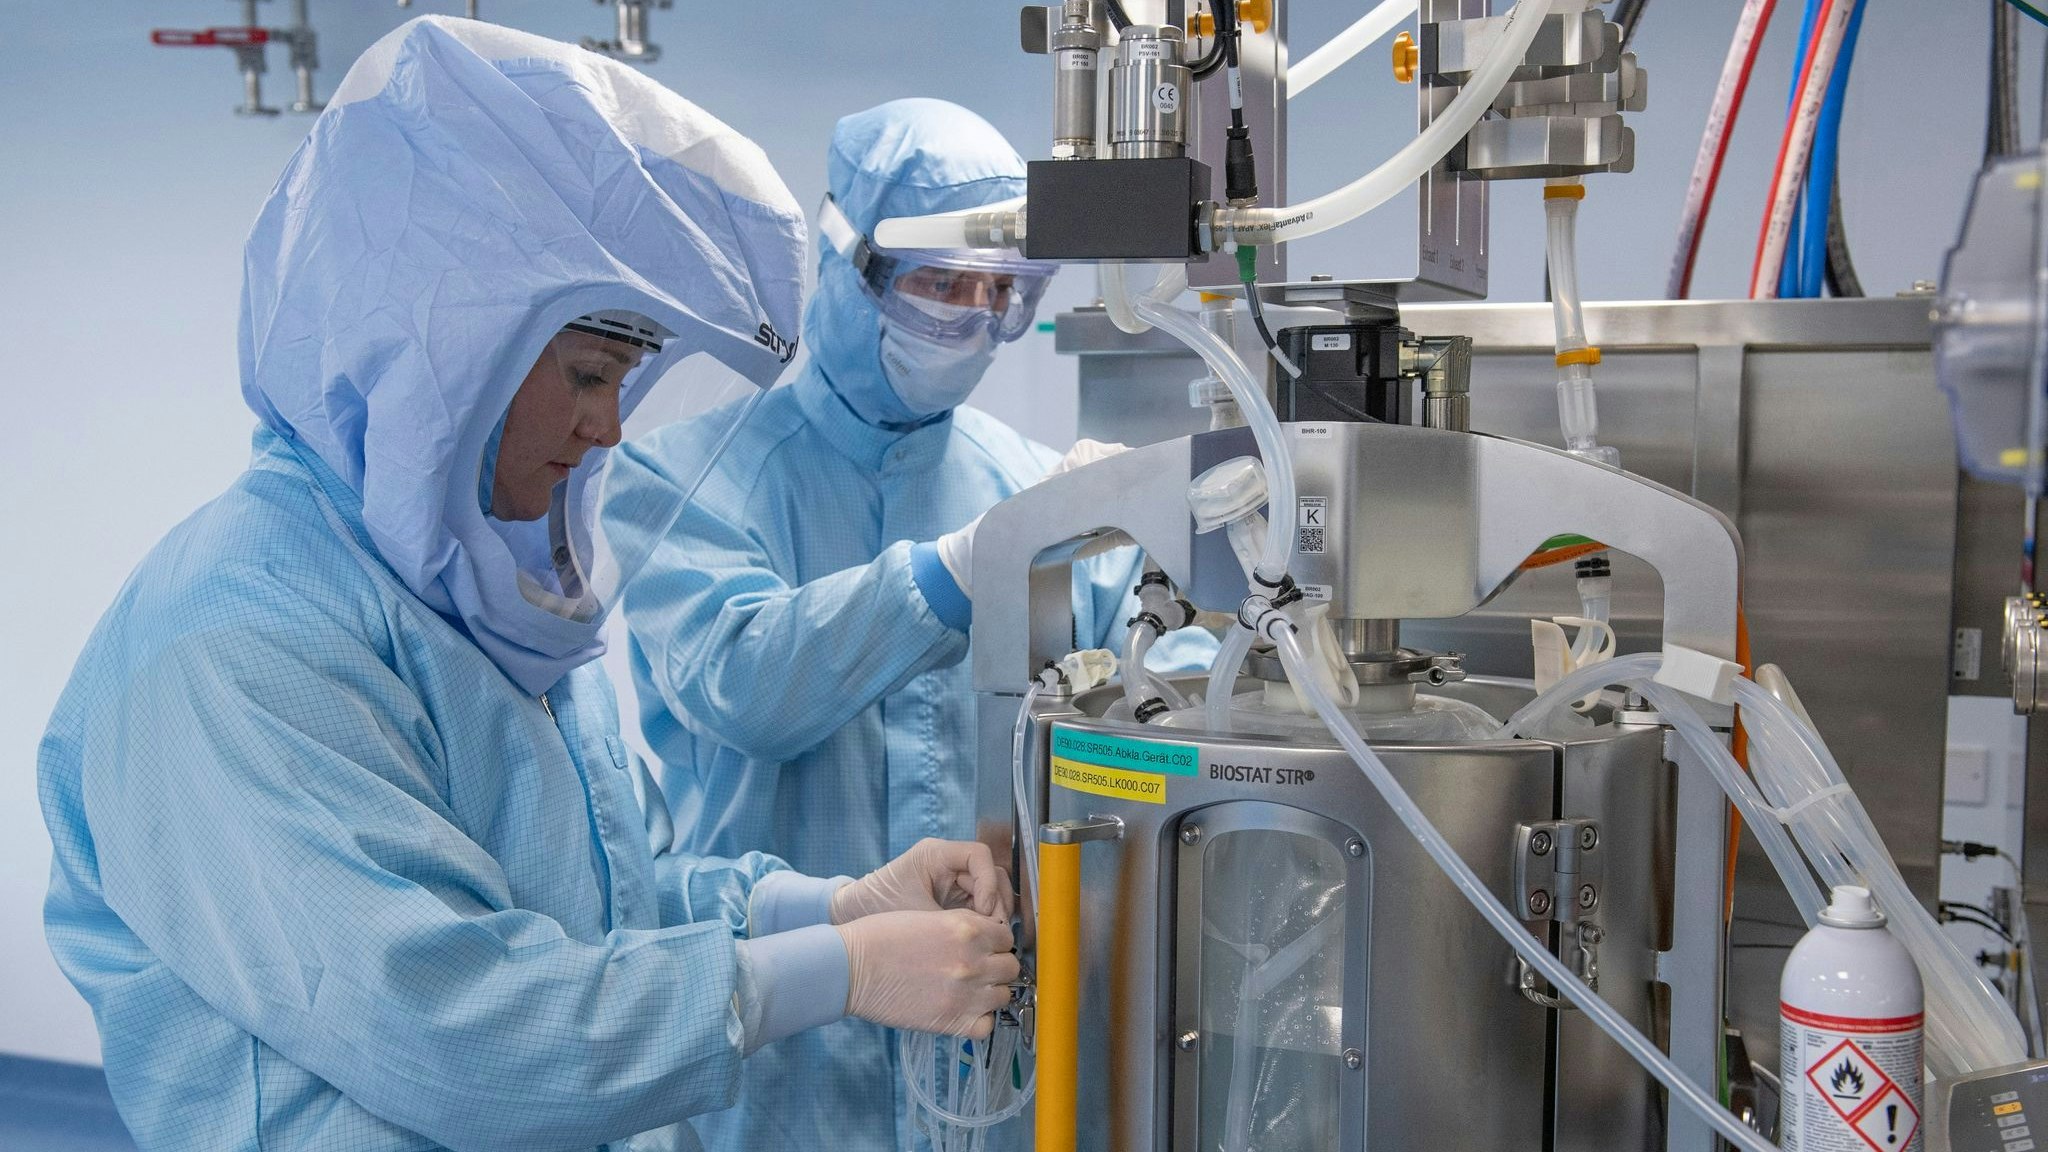 Laborantinnen der Firma Biontech in Marburg simulieren die finalen Arbeitsschritte zur Herstellung des Corona-Impfstoffes an einem Bioreaktor. Foto: dpa/Roessler